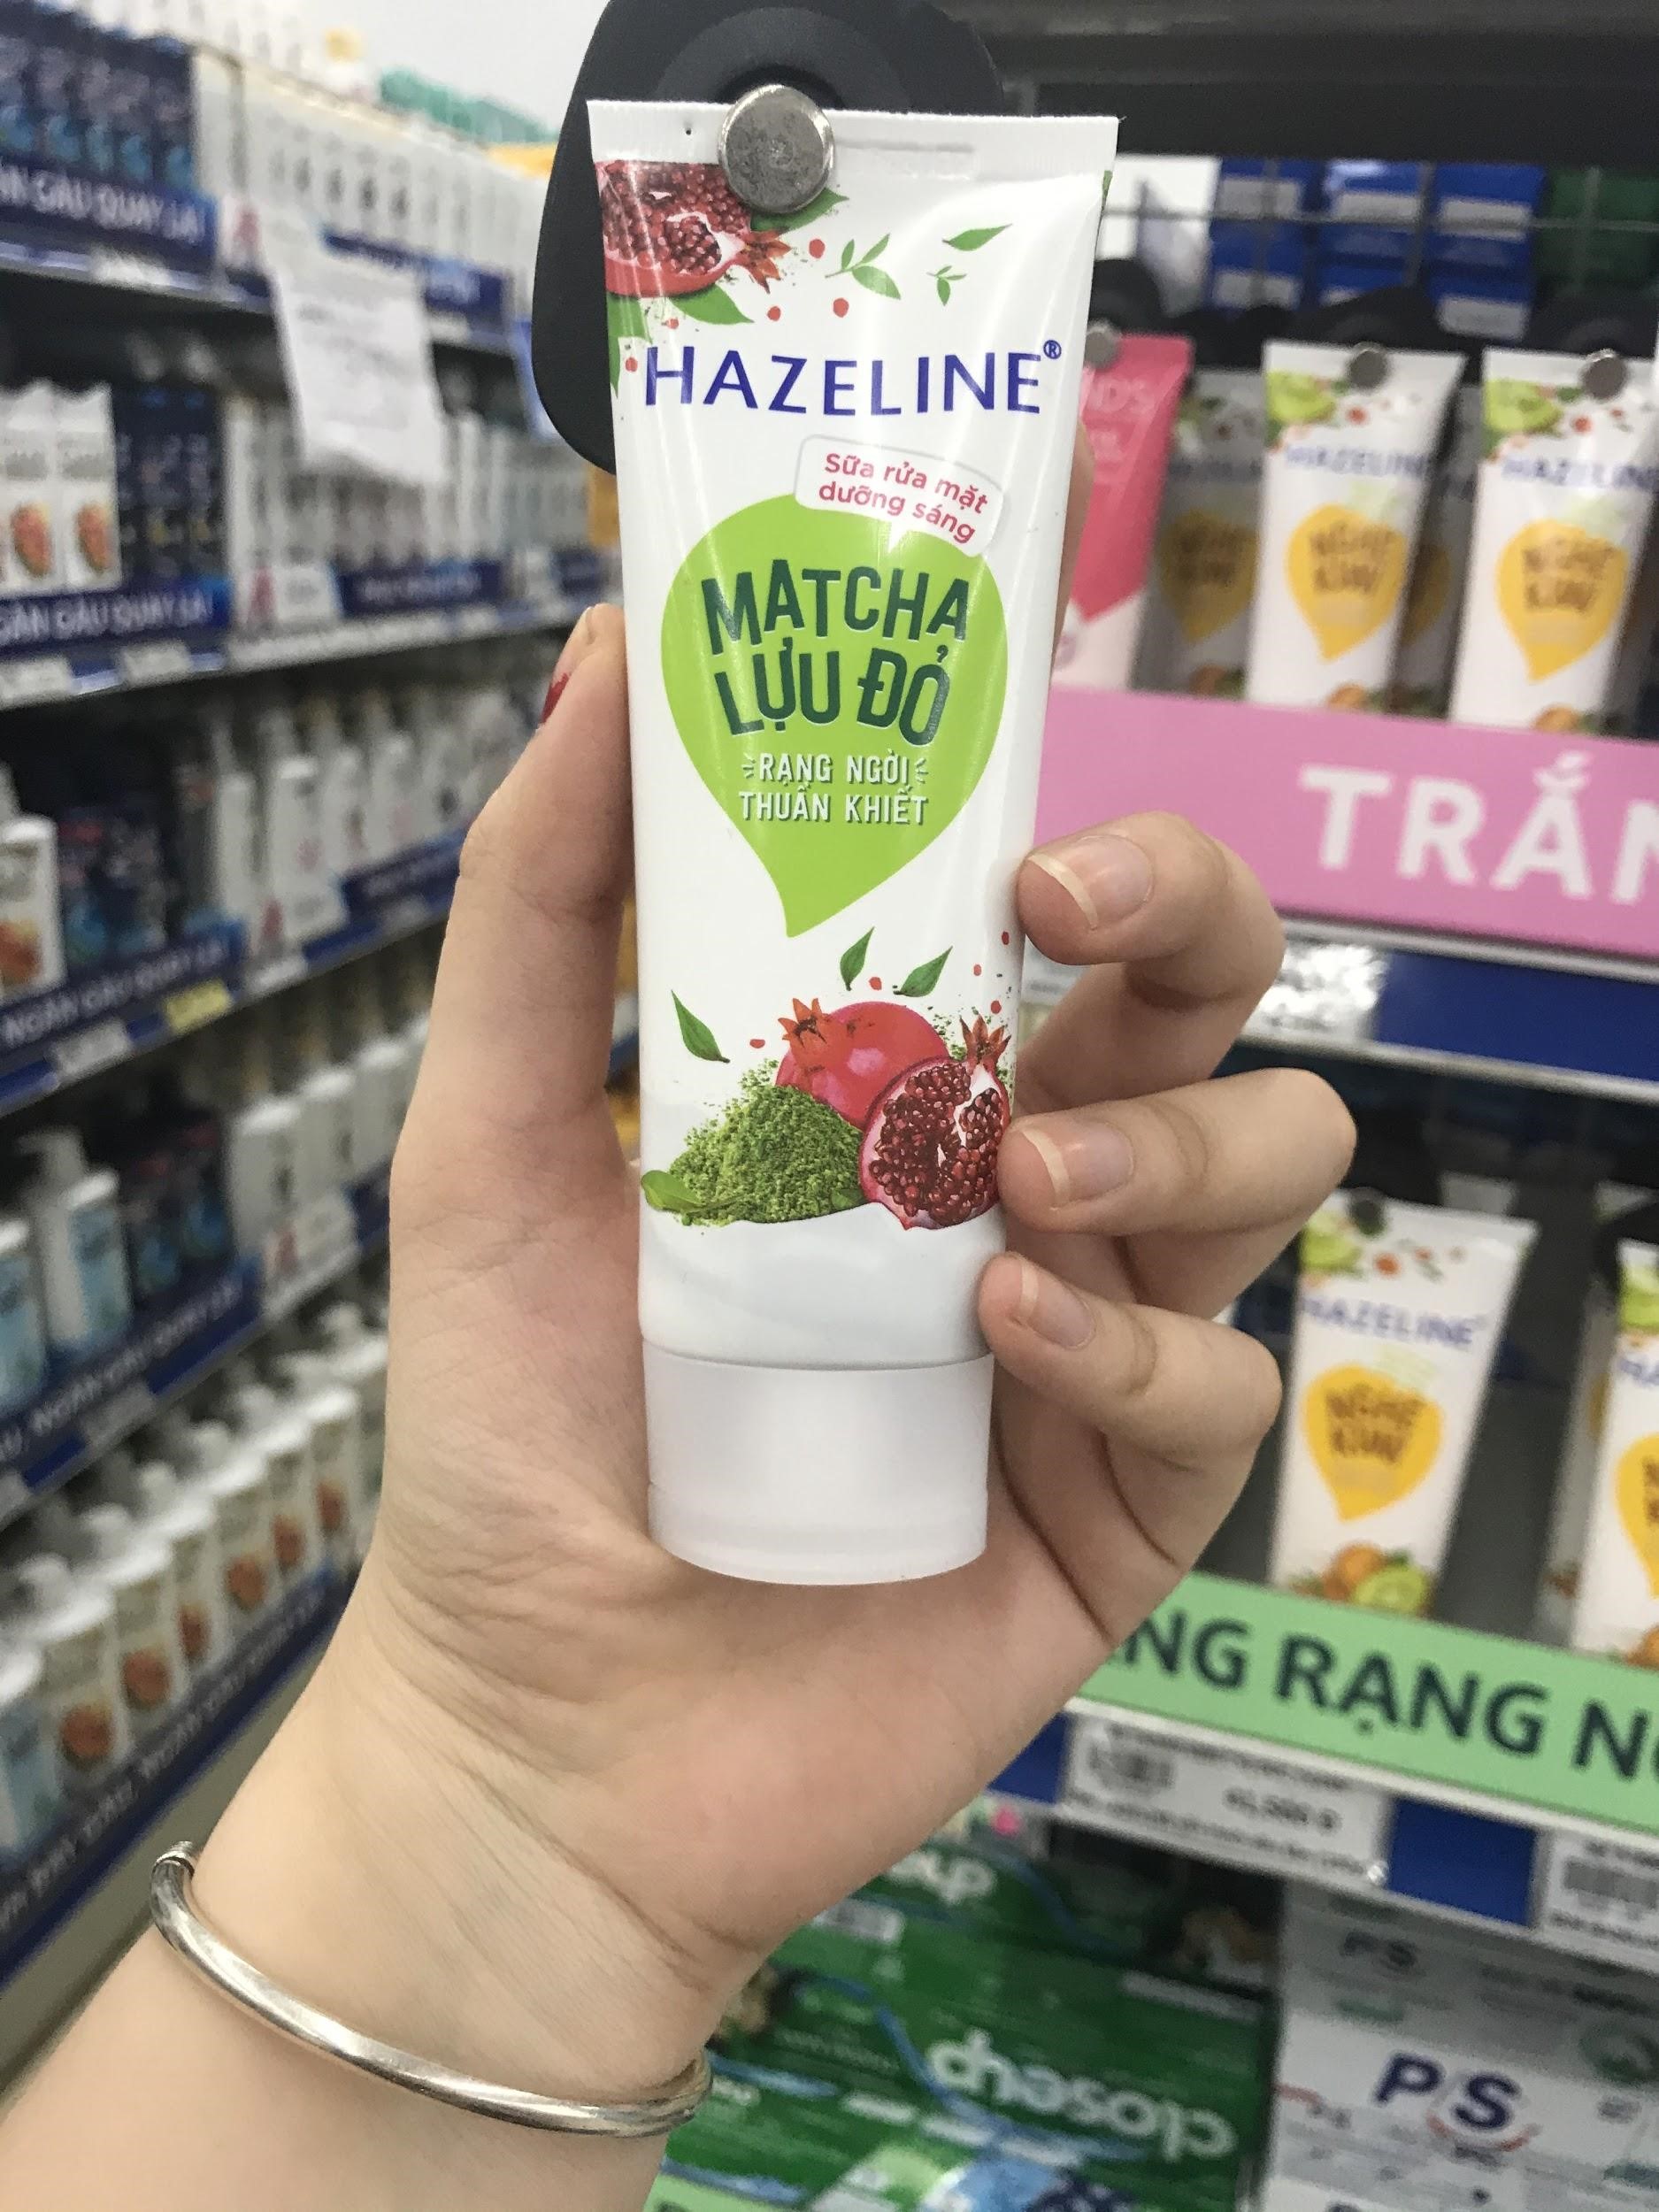 Sữa rửa mặt Hazeline Matcha lựu đỏ được bày bán phổ biến, mình mua dễ dàng trong siêu thị.